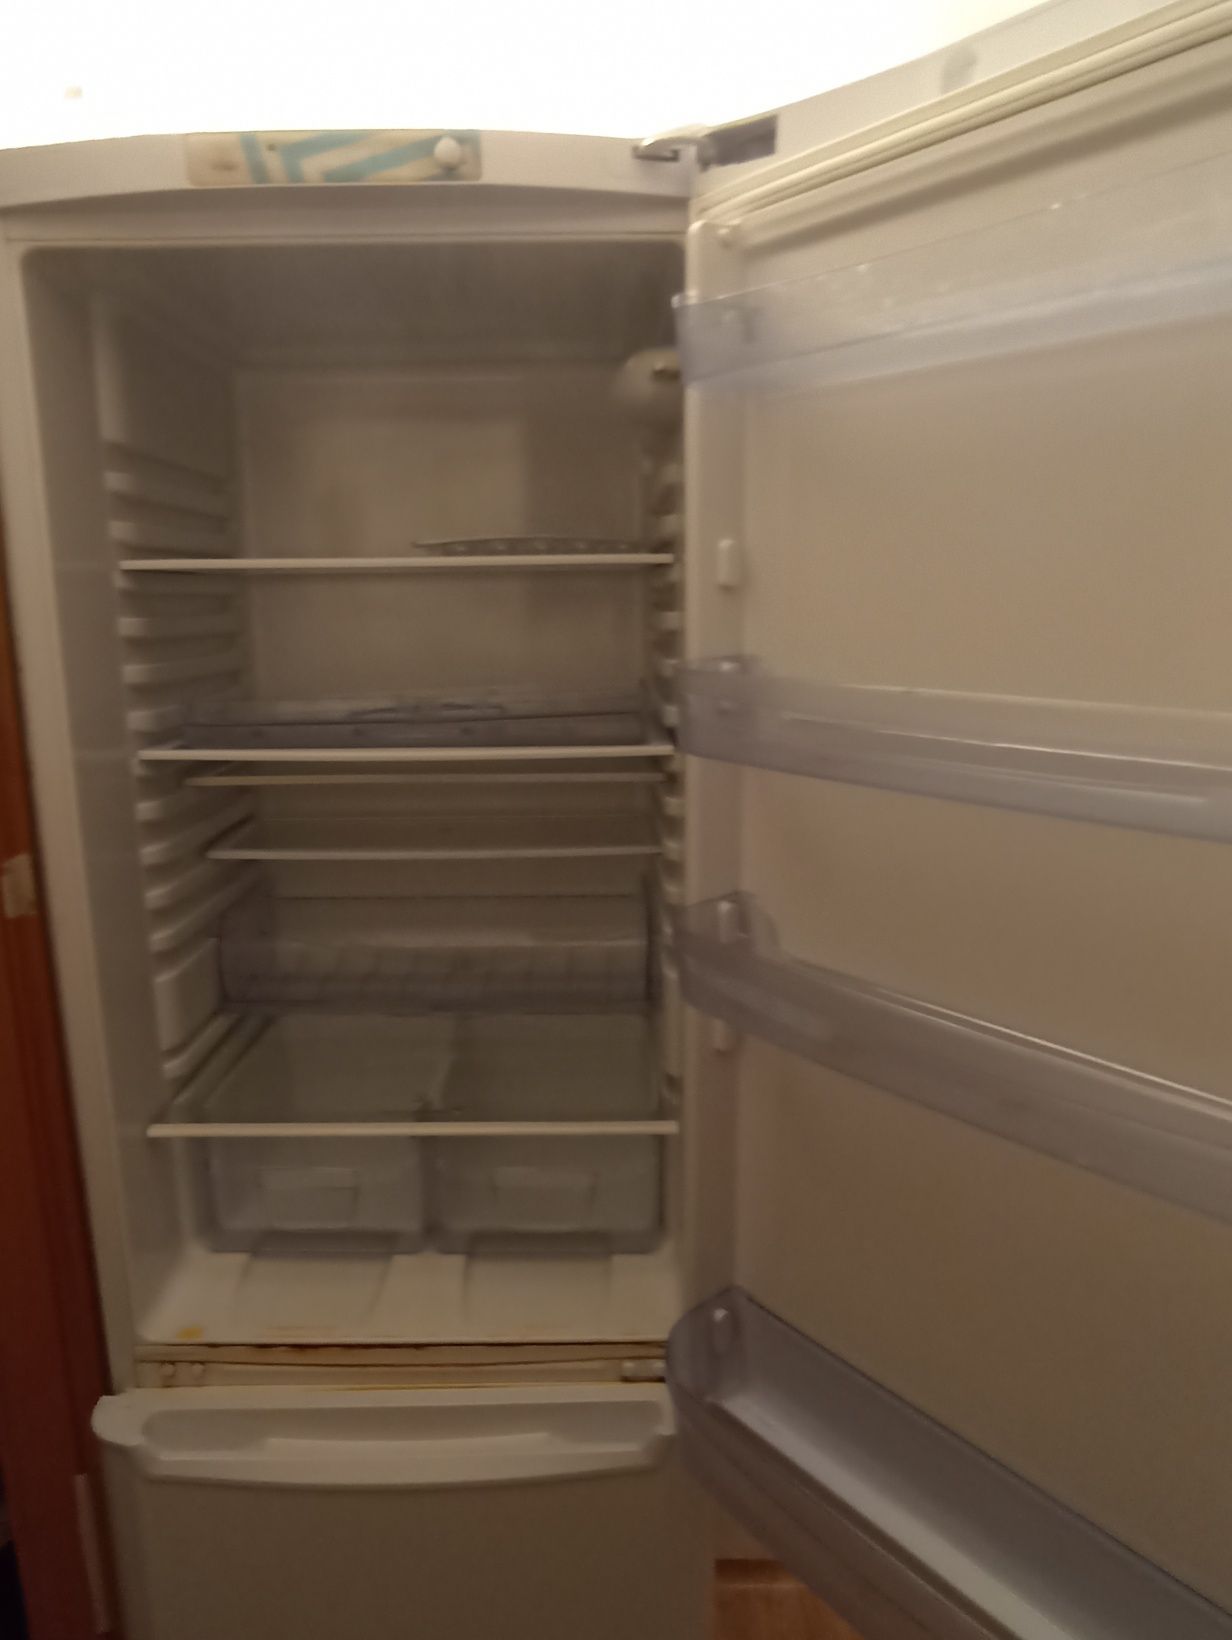 Холодильник двух камерный производства indesit, НЕ РАБОТАЕТ.